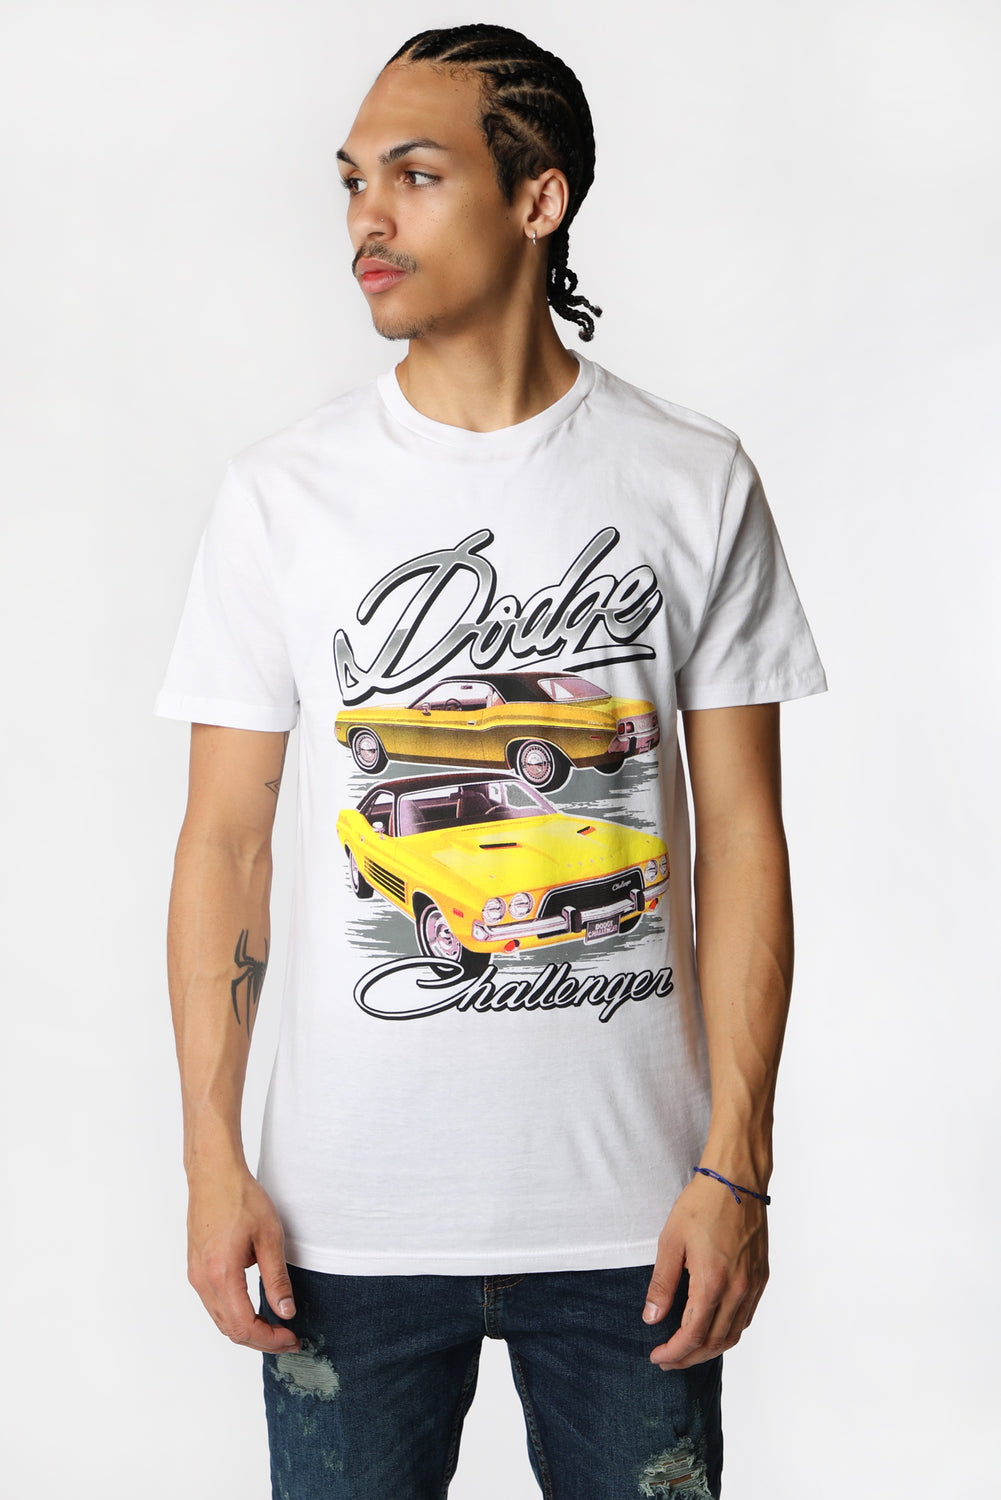 T-Shirt Imprimé Dodge Challenger Homme T-Shirt Imprimé Dodge Challenger Homme